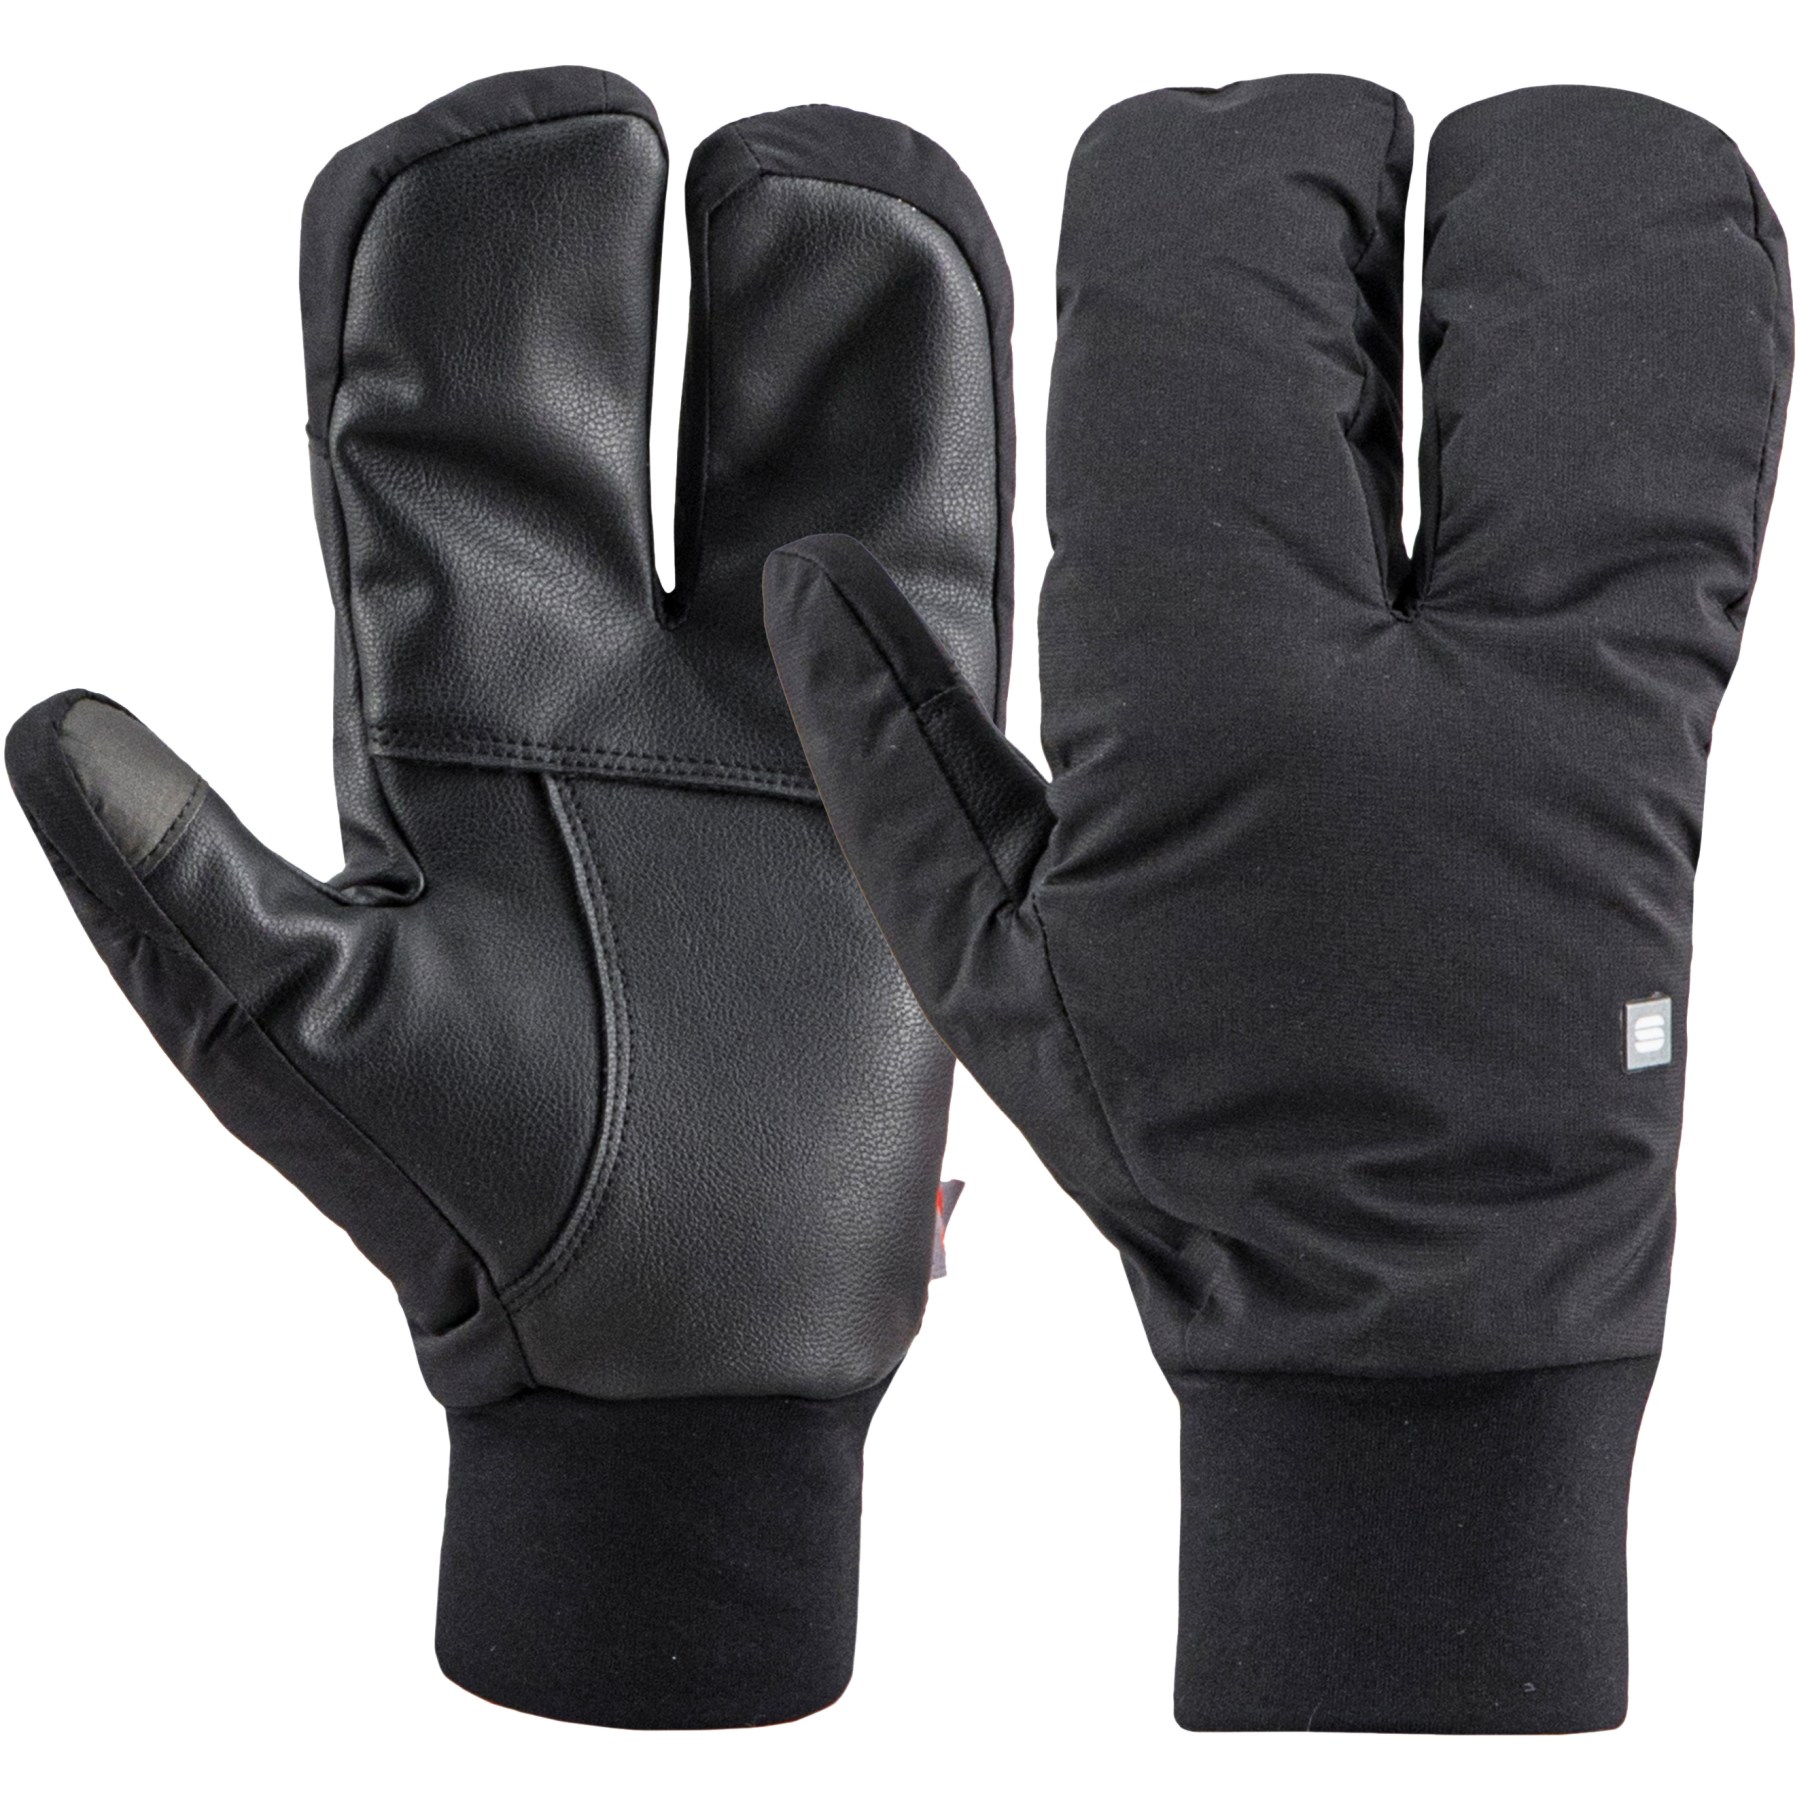 Picture of Sportful Subzero 3F Gloves - 002 Black